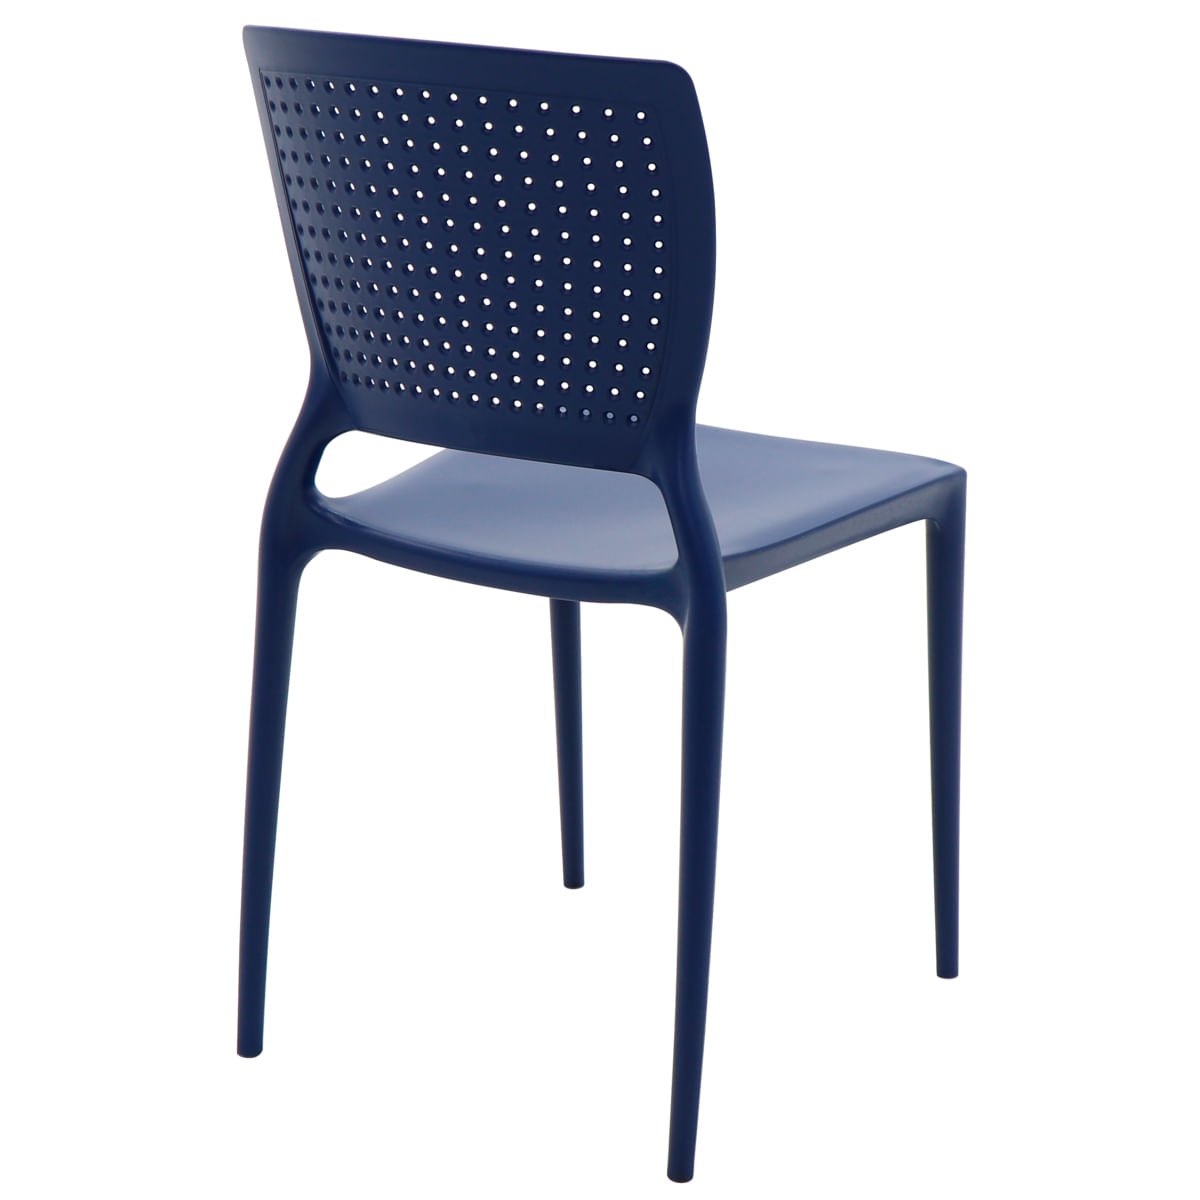 Cadeira Tramontina Safira Summa em Polipropileno e Fibra de Vidro Azul Yale - 6